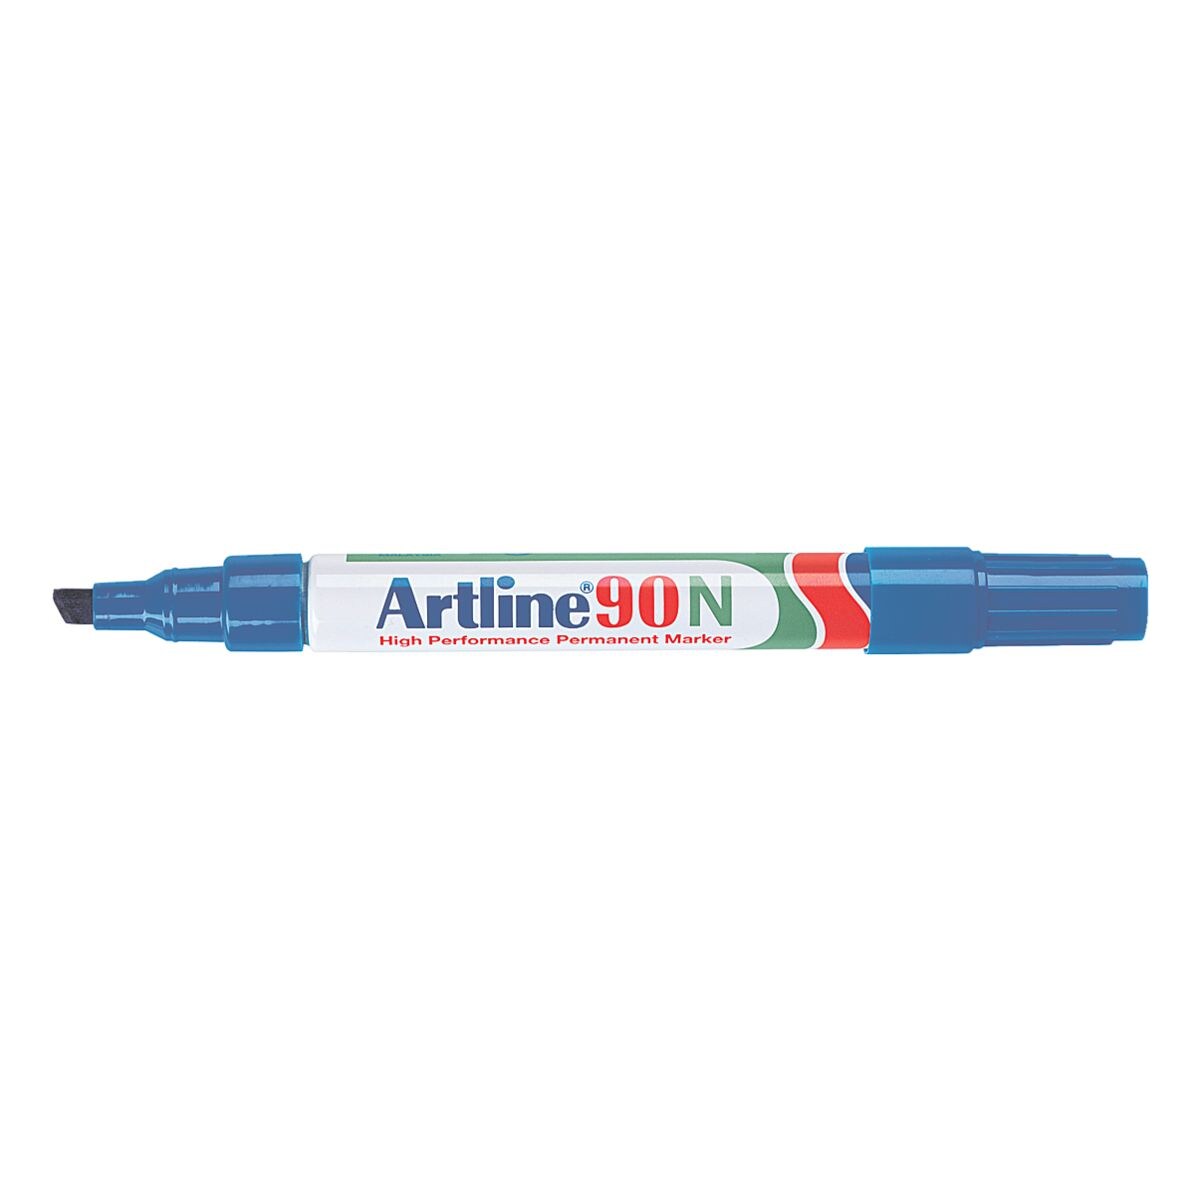 Artline marqueur indlbile 90N - pointe biseaute, Epaisseur de trait 2,0  - 5,0 mm (XB)